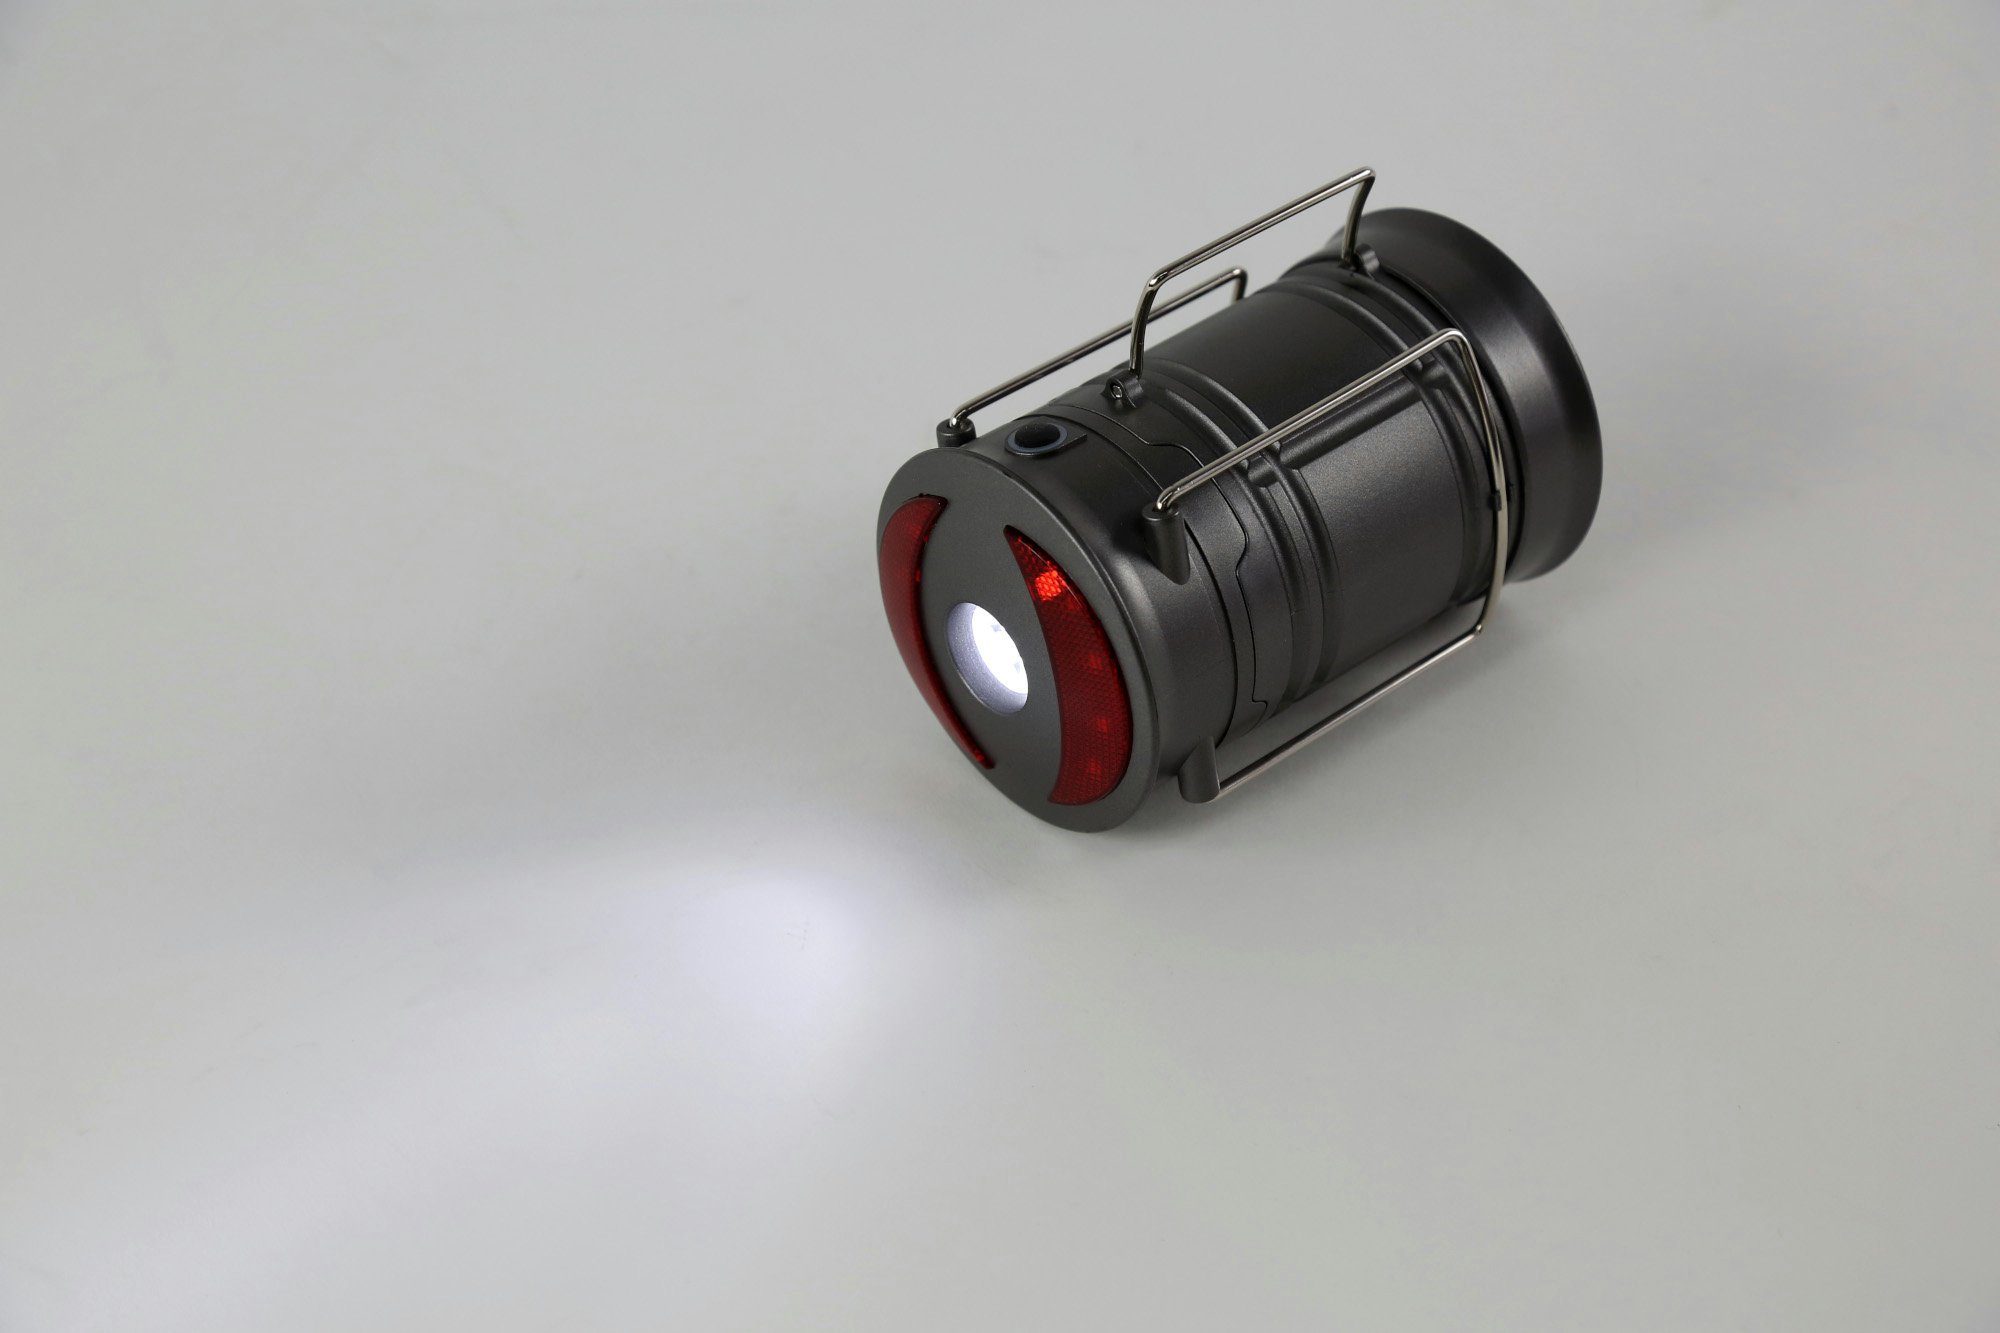 Handscheinwerfer, 360 Camping Tischleuchte ONDIS24 Lumen batteriebetrieben rot/weiße LED LED Laterne Multifunktionslampe Taschenlampe Outdoor ausziehbar LED